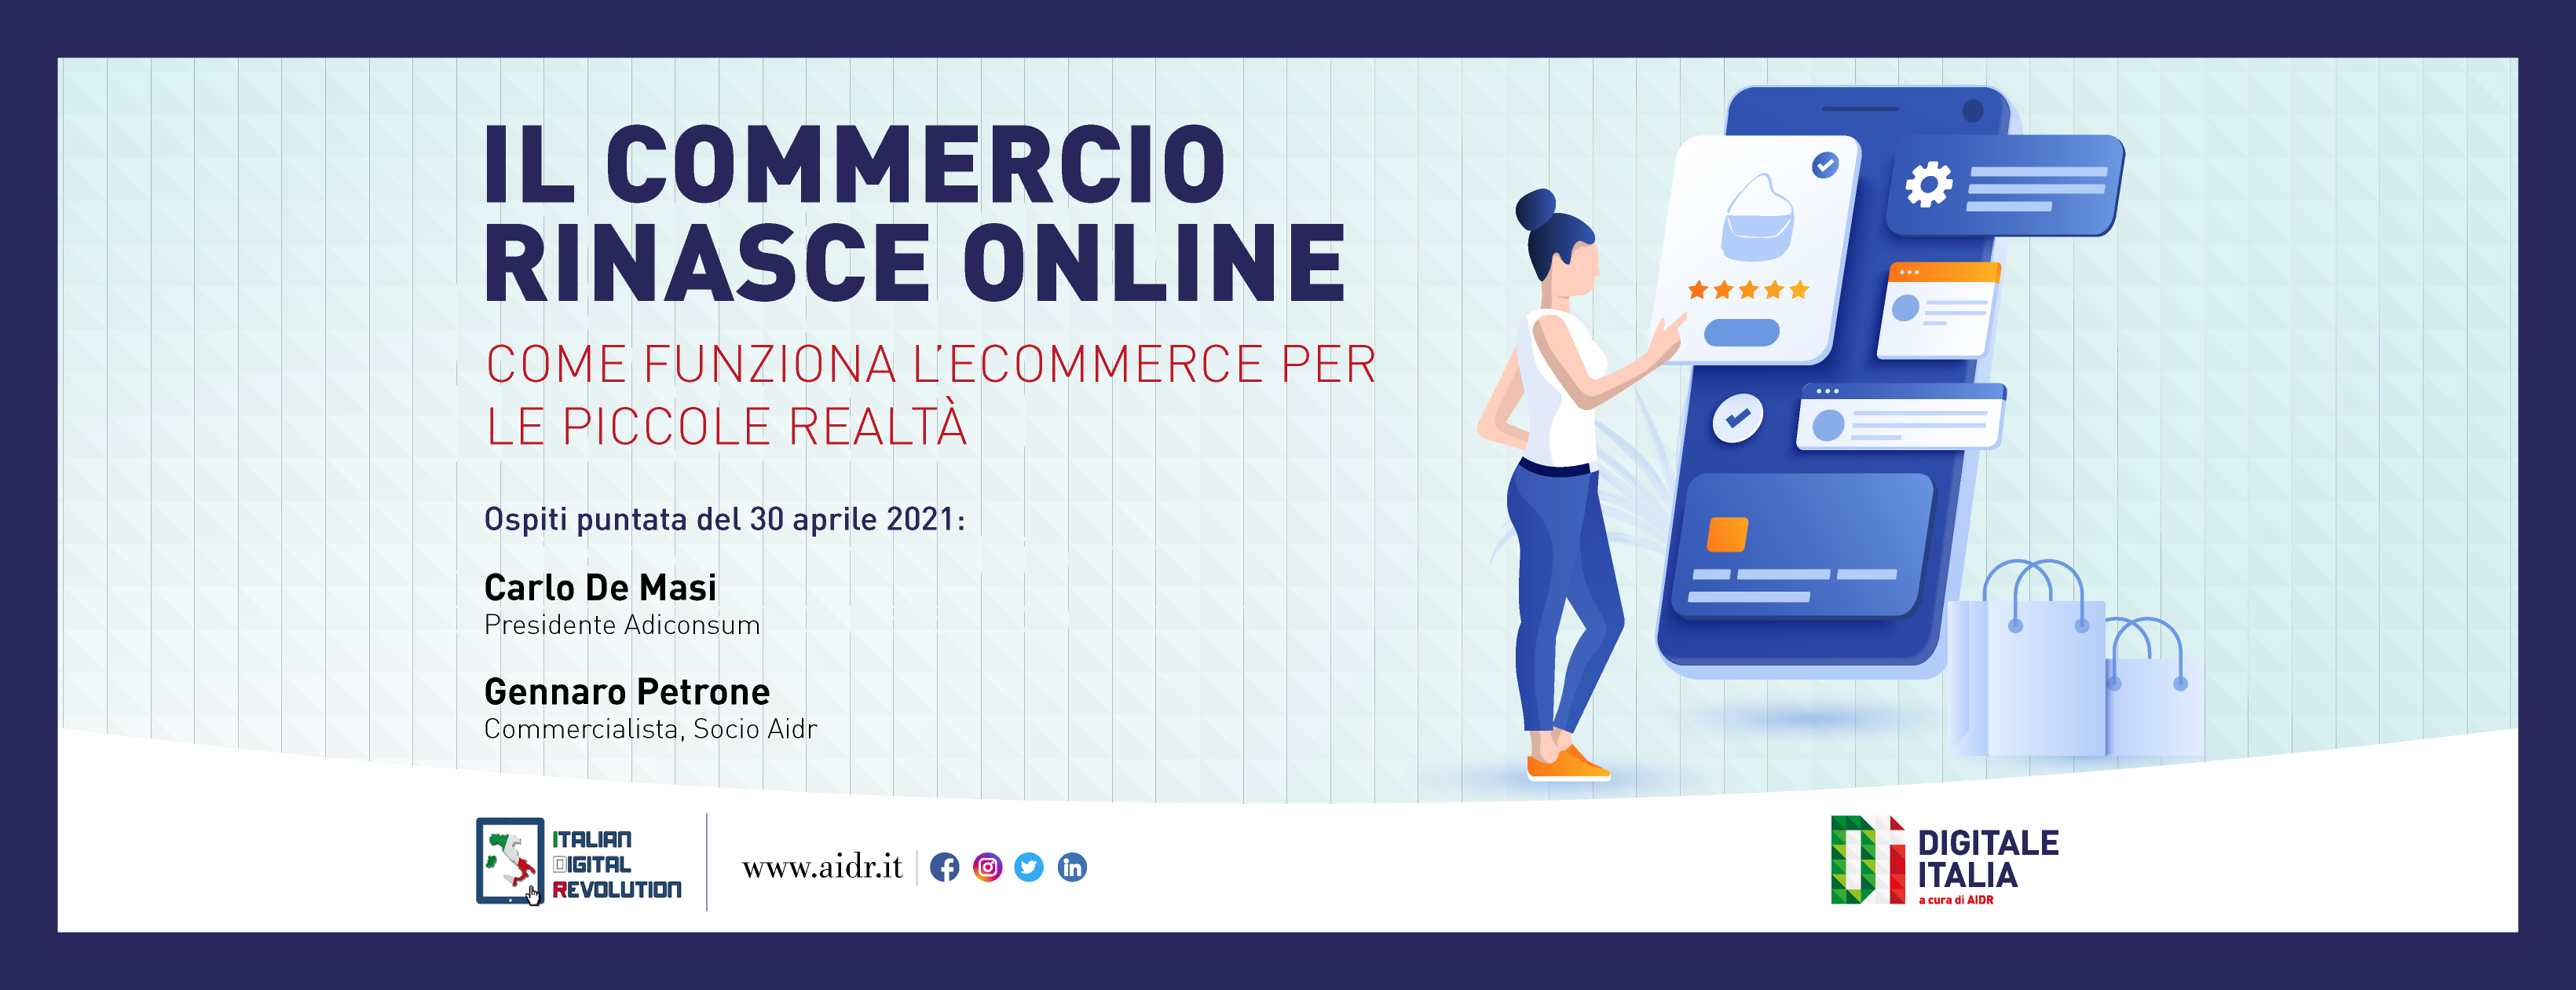 L’E-commerce per il rilancio dell’economia, approfondimento a Digitale Italia